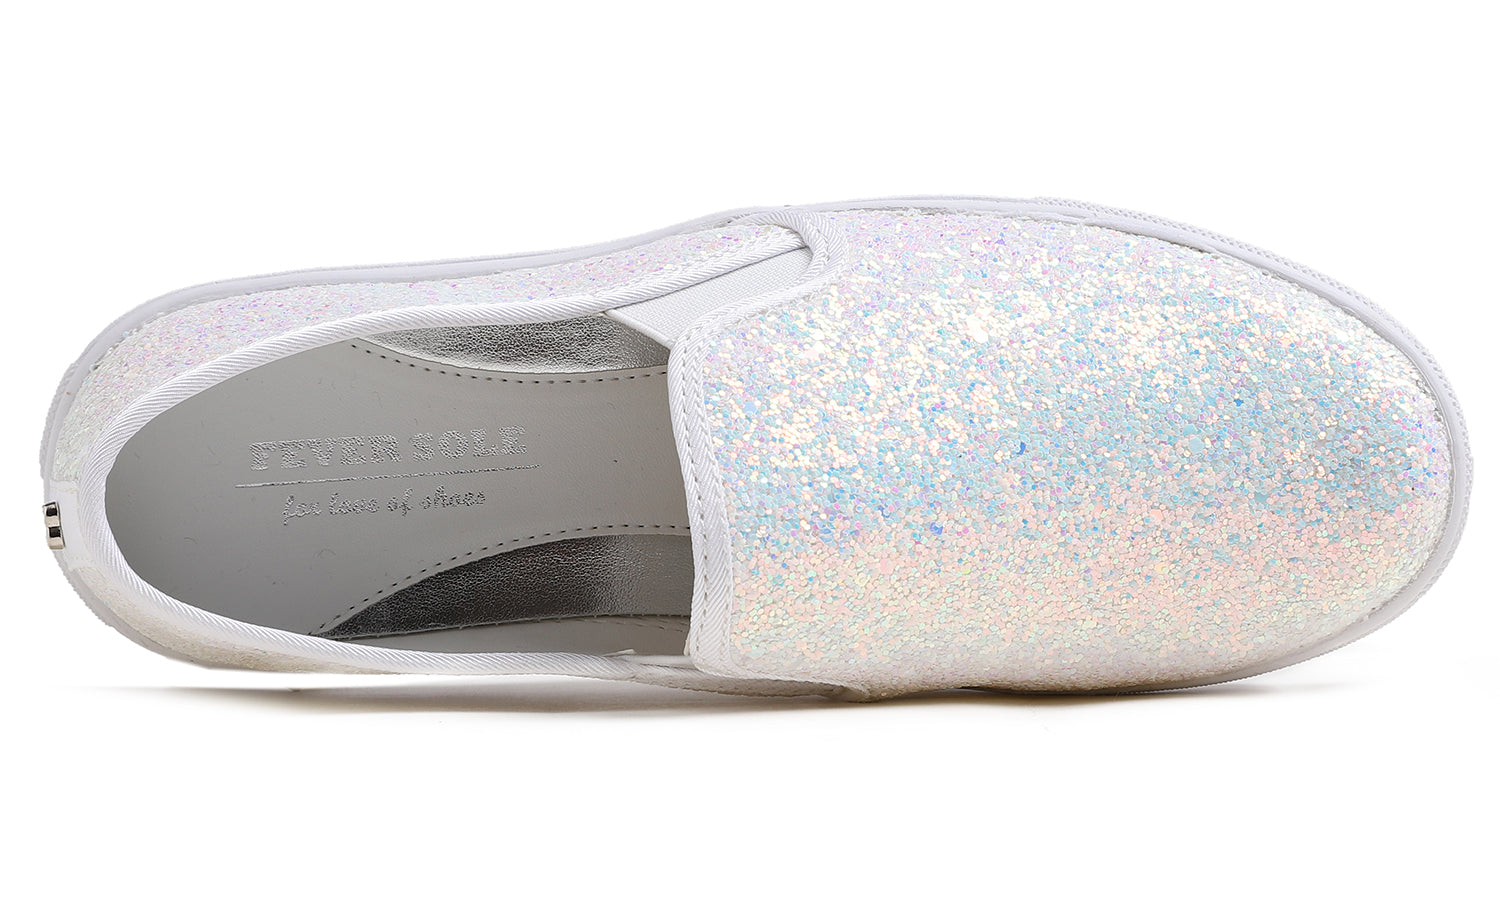 Feversole Women's Glitter White Slip On Sneaker Casual Flat Loafers